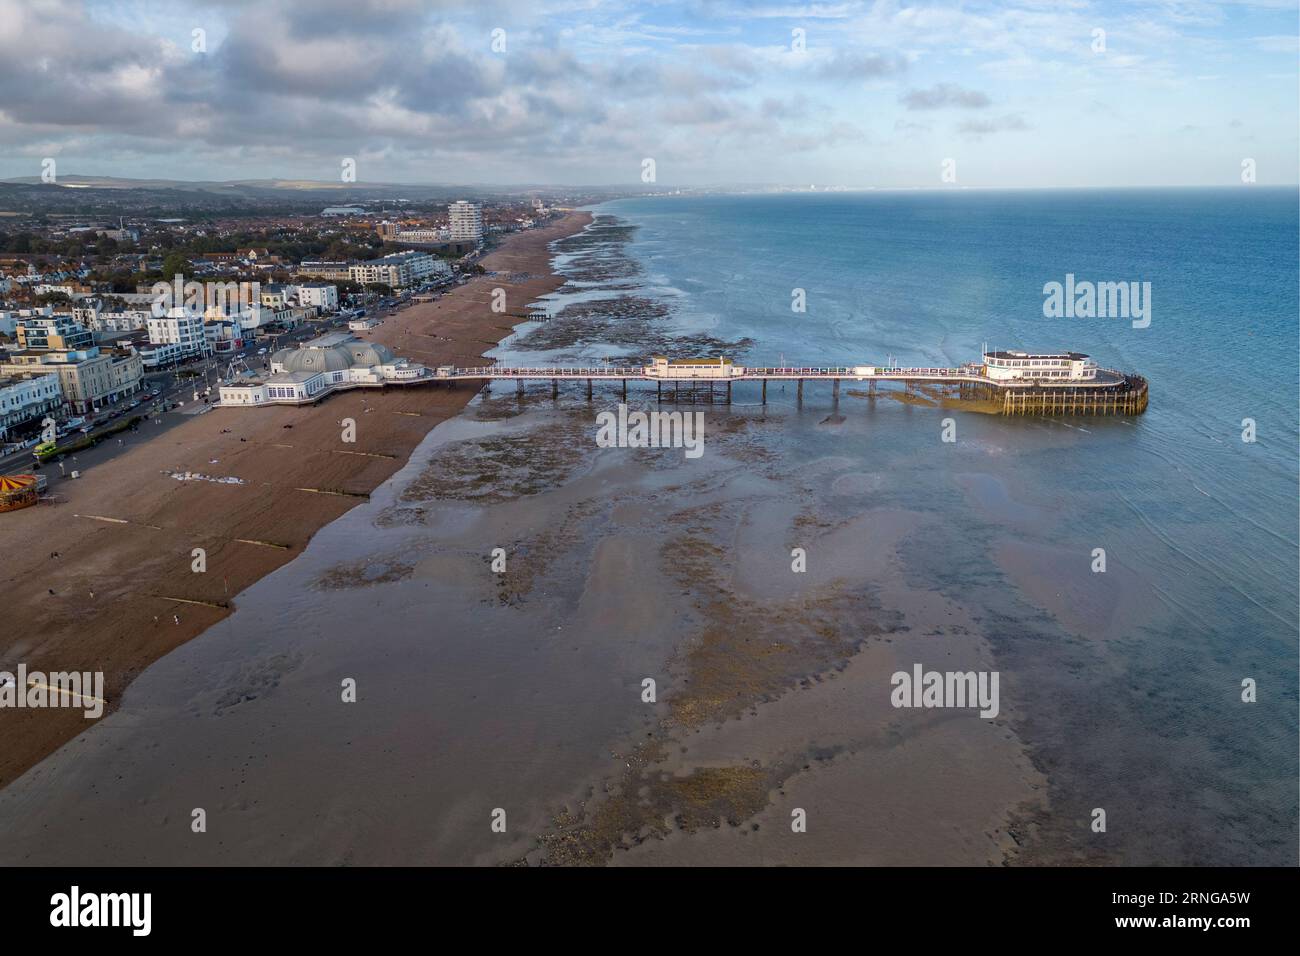 Vista aérea de la playa mirando hacia el muelle, Worthing, West Sussex, Reino Unido. Foto de stock